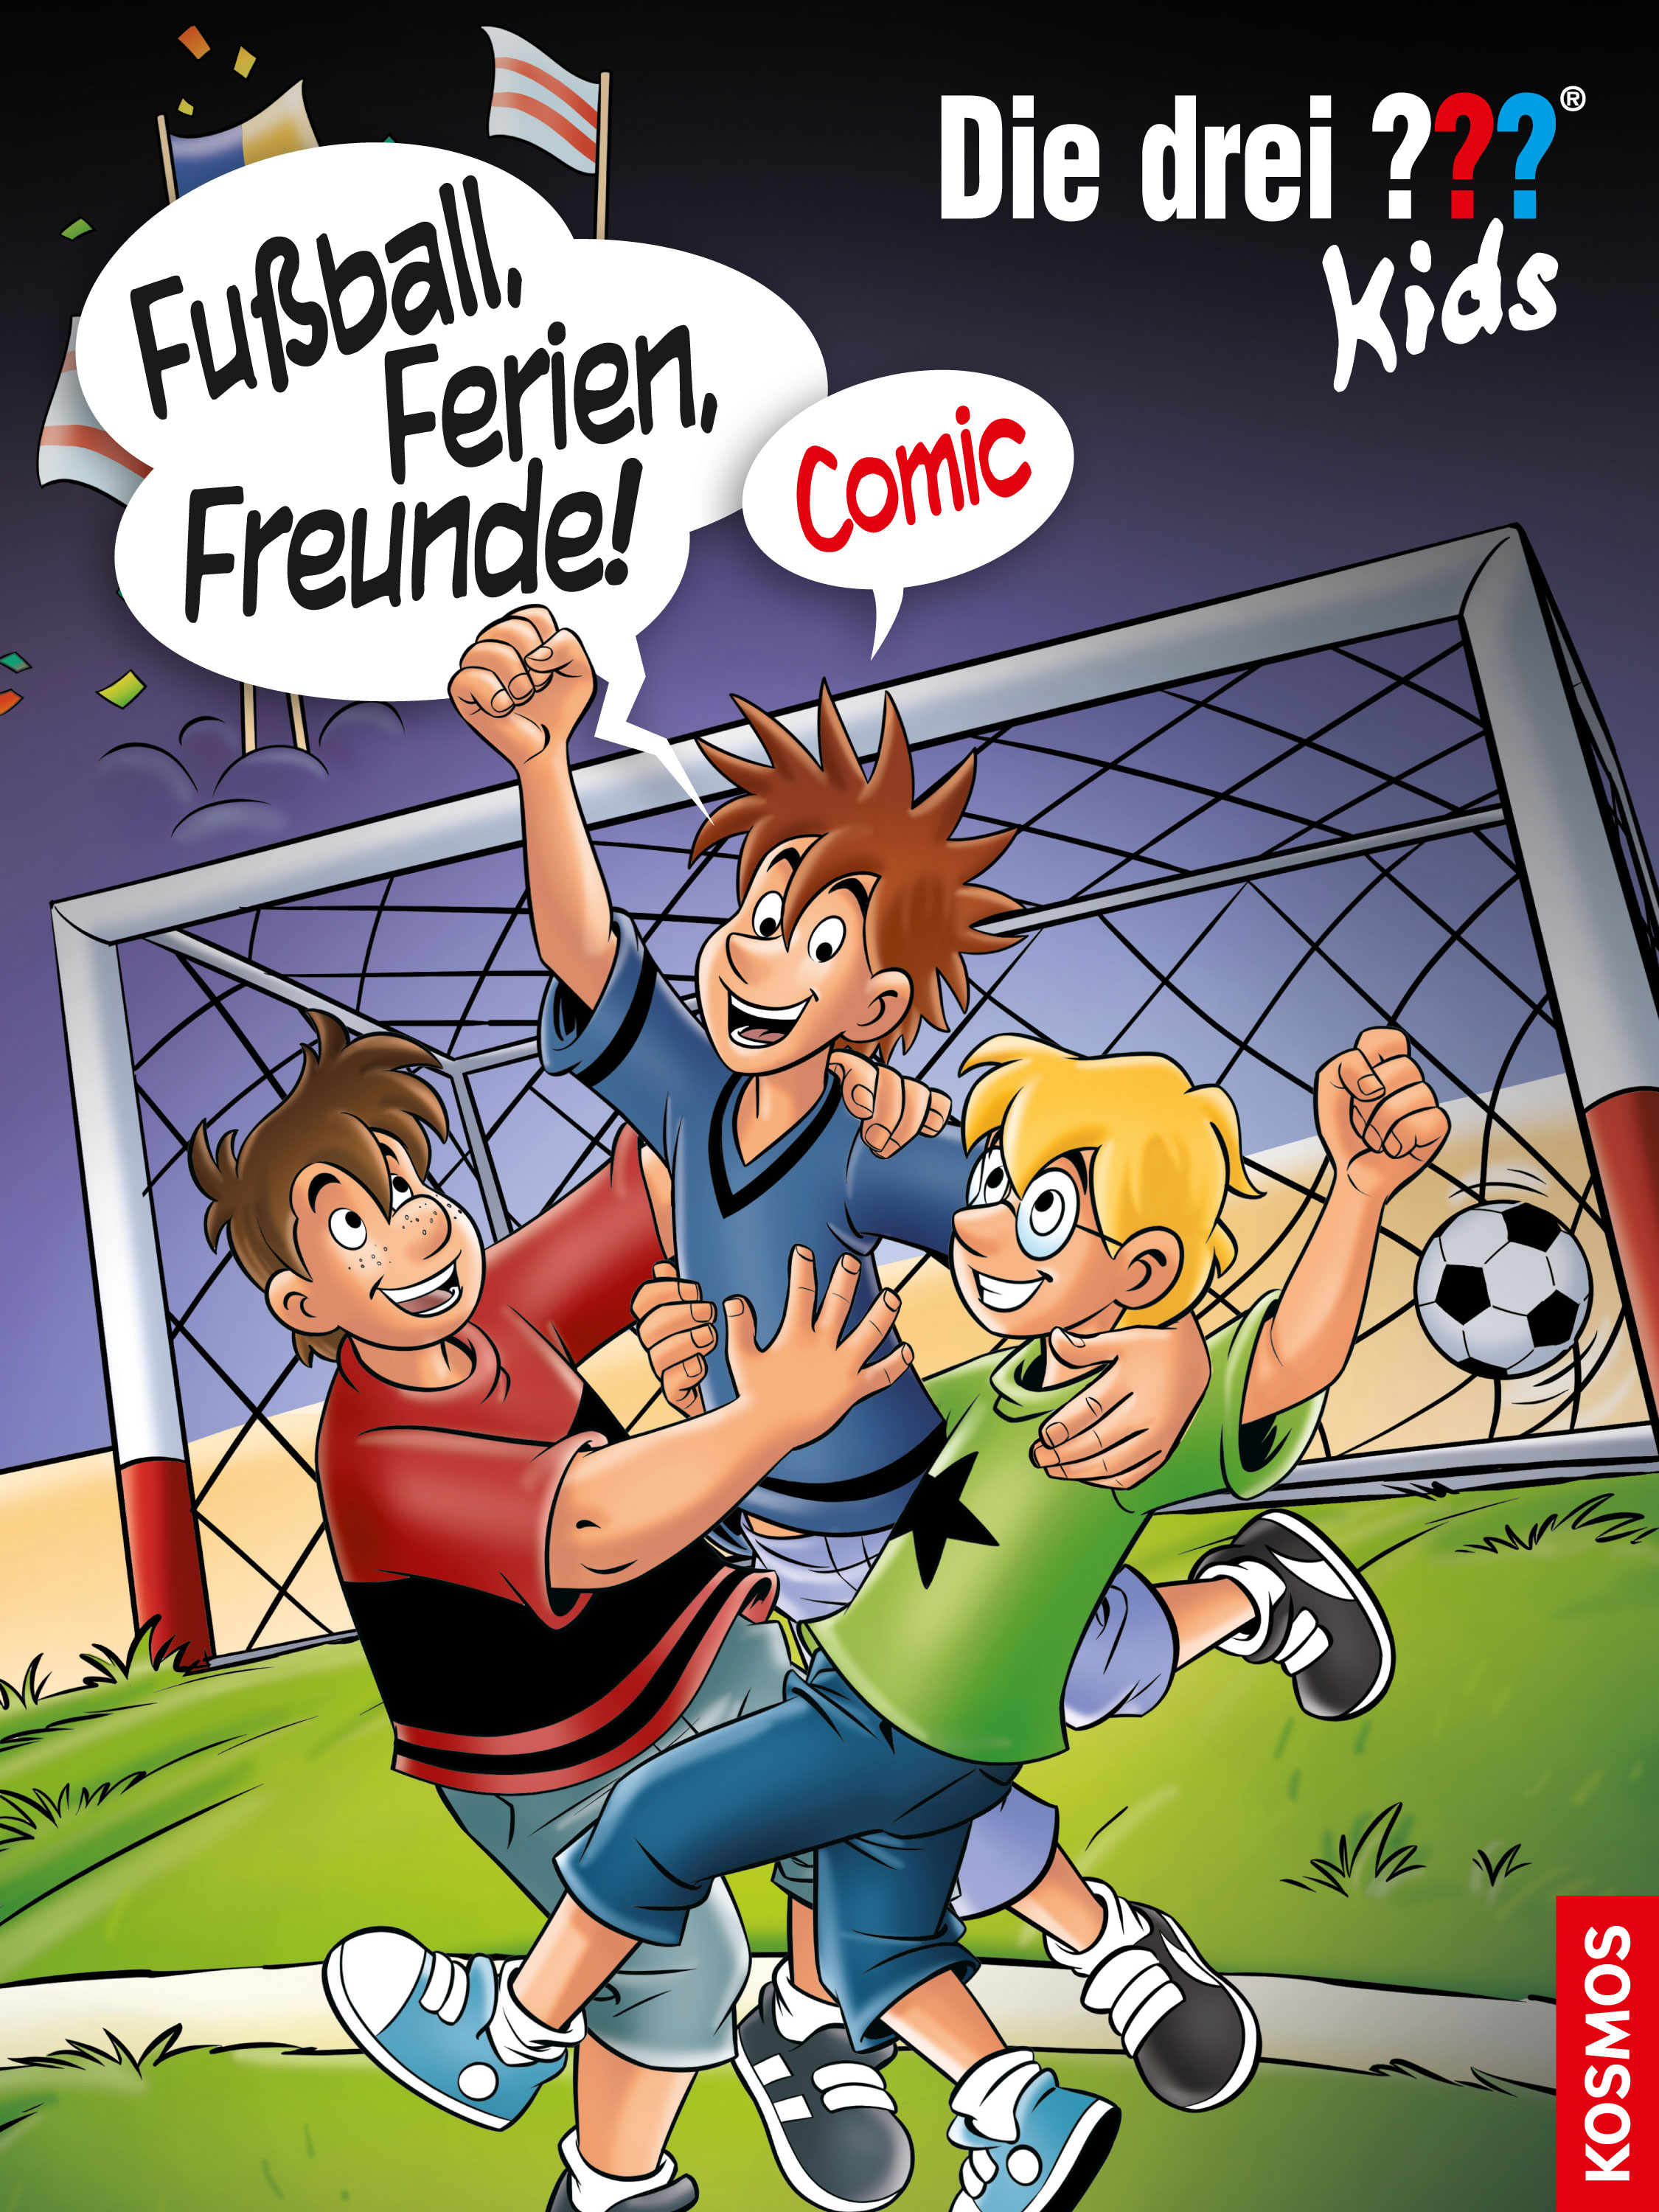 Die Drei ??? (Fragezeichen) Kids, Buch-Band 500: Die drei ??? Kids, Fußball, Ferien, Freunde!